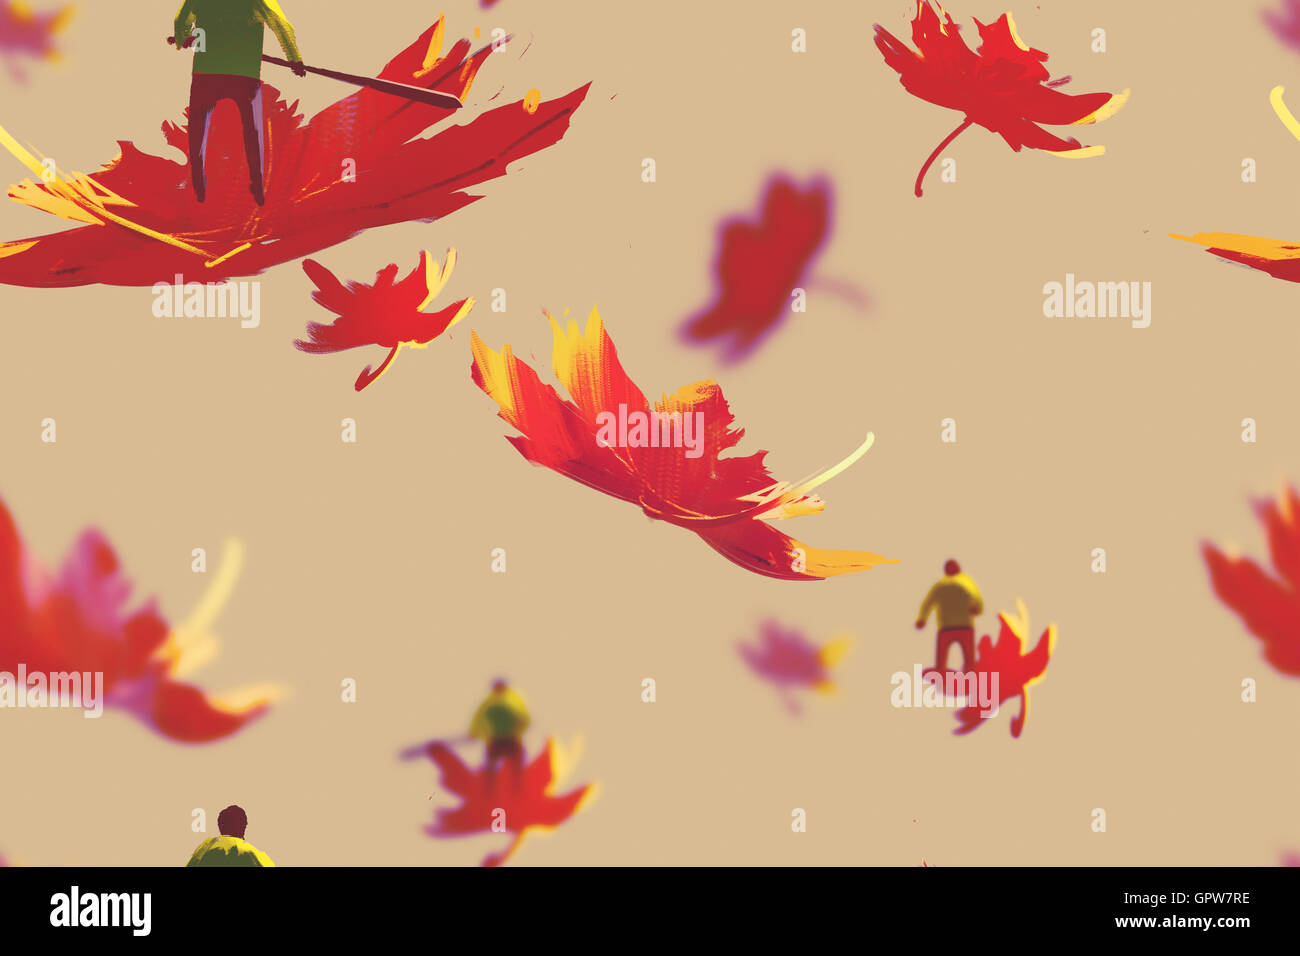 Un motif de petits hommes sur feuilles d'érable de l'automne,Peinture,illustration concept Banque D'Images